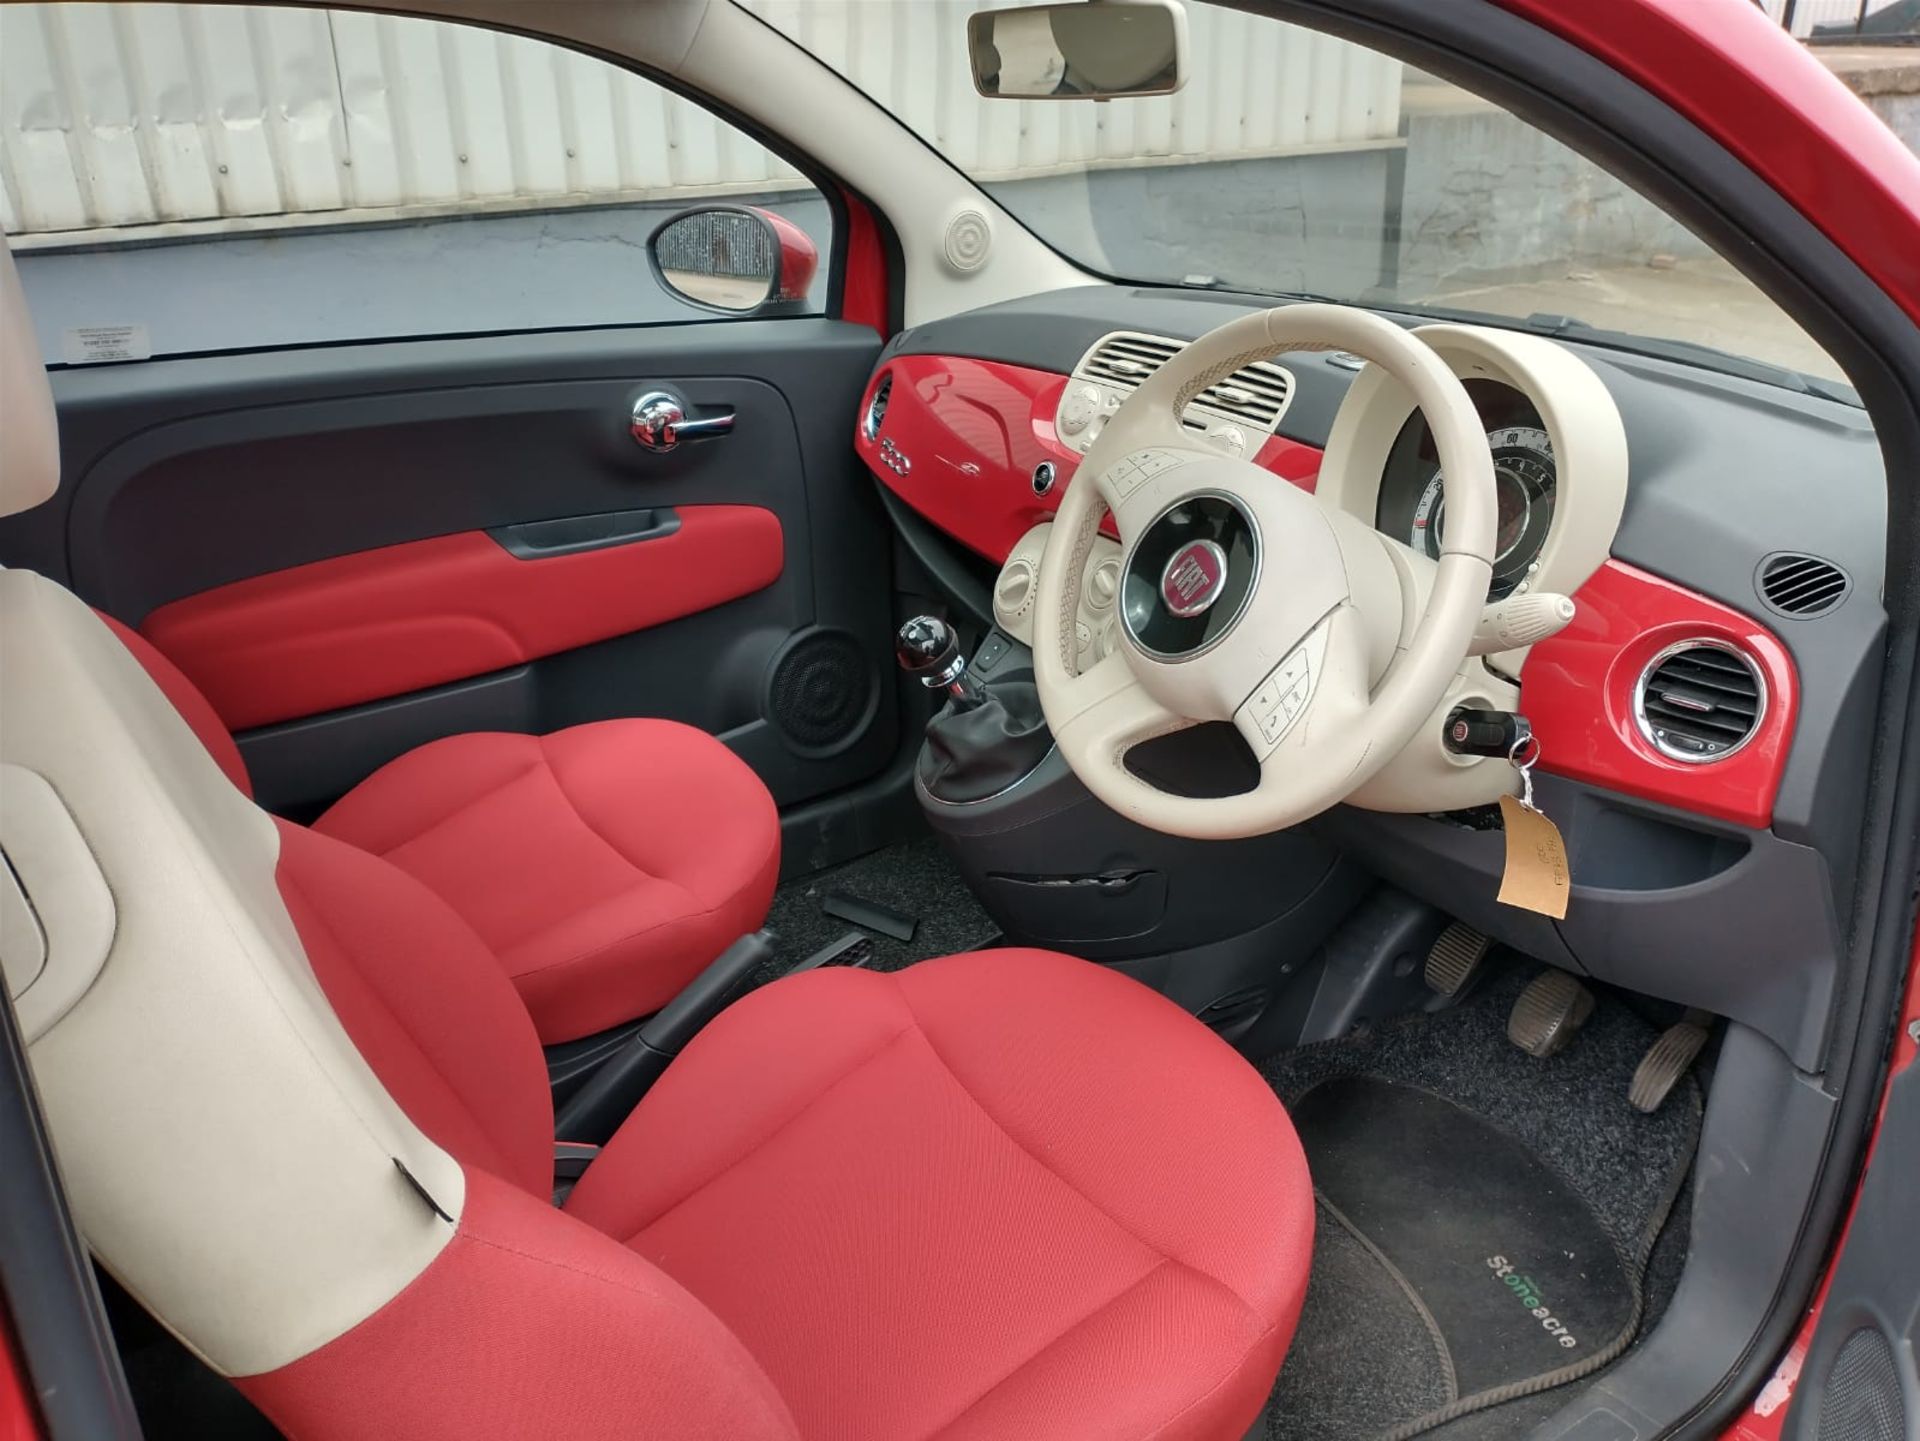 2013 Fiat 500 1.2 3Dr hatchback - Image 4 of 13